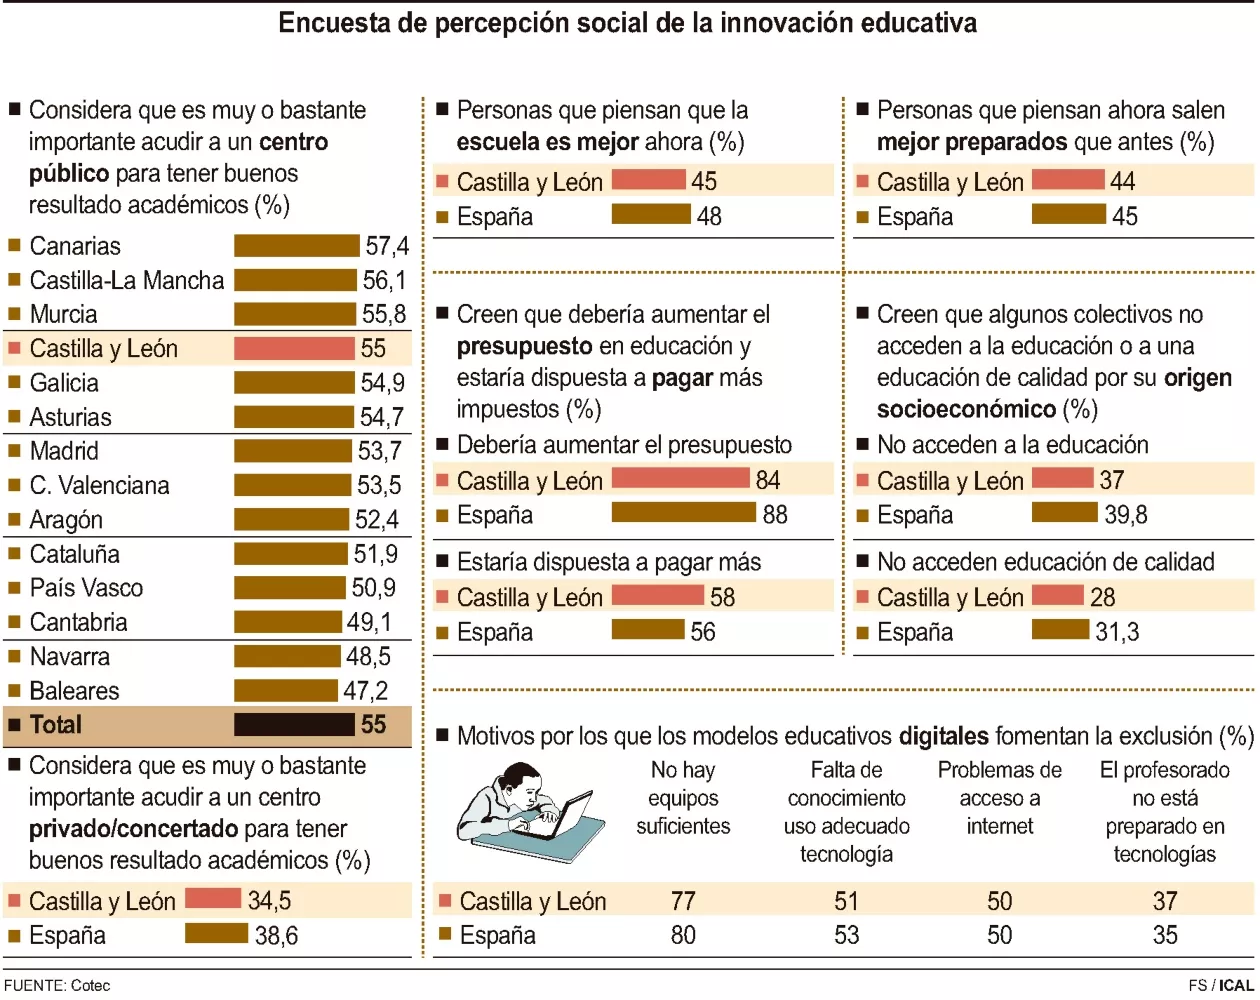 Grafico encuesta de percepción social de la innovación educativa